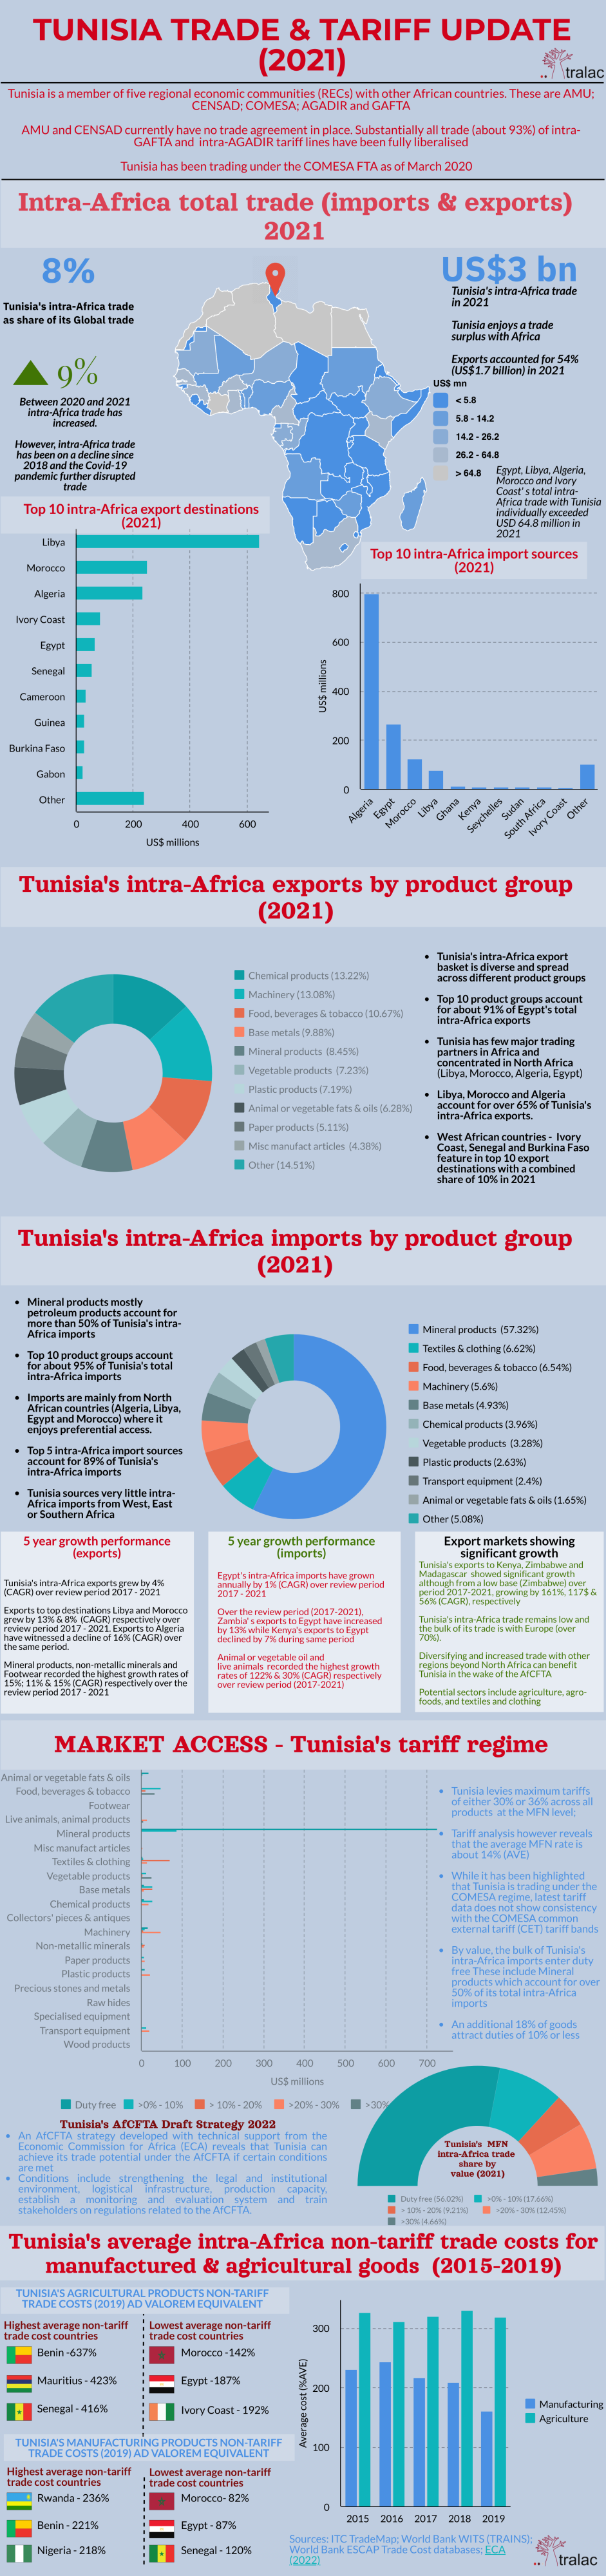 Tunisia trade and tariff update 2021